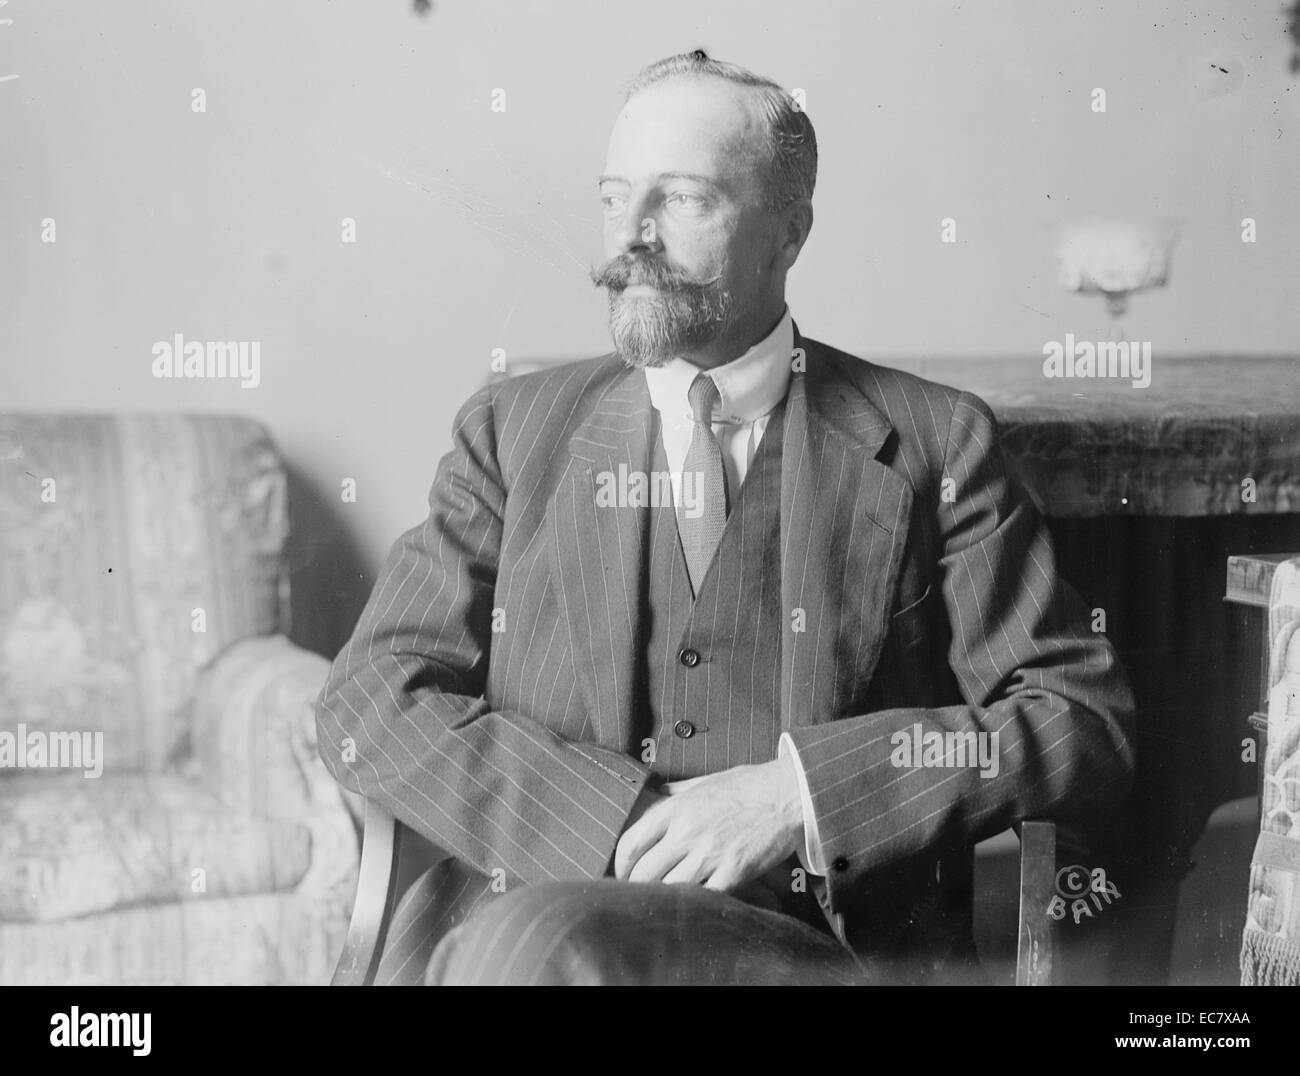 Grand-duc Alexandre Mikhaïlovitch de Russie, (13 avril 1866 - 26 février 1933) était un dynast de l'Empire russe, un officier de marine, un auteur, explorer, le beau-frère de l'Empereur Nicolas II et conseiller auprès de lui. Banque D'Images